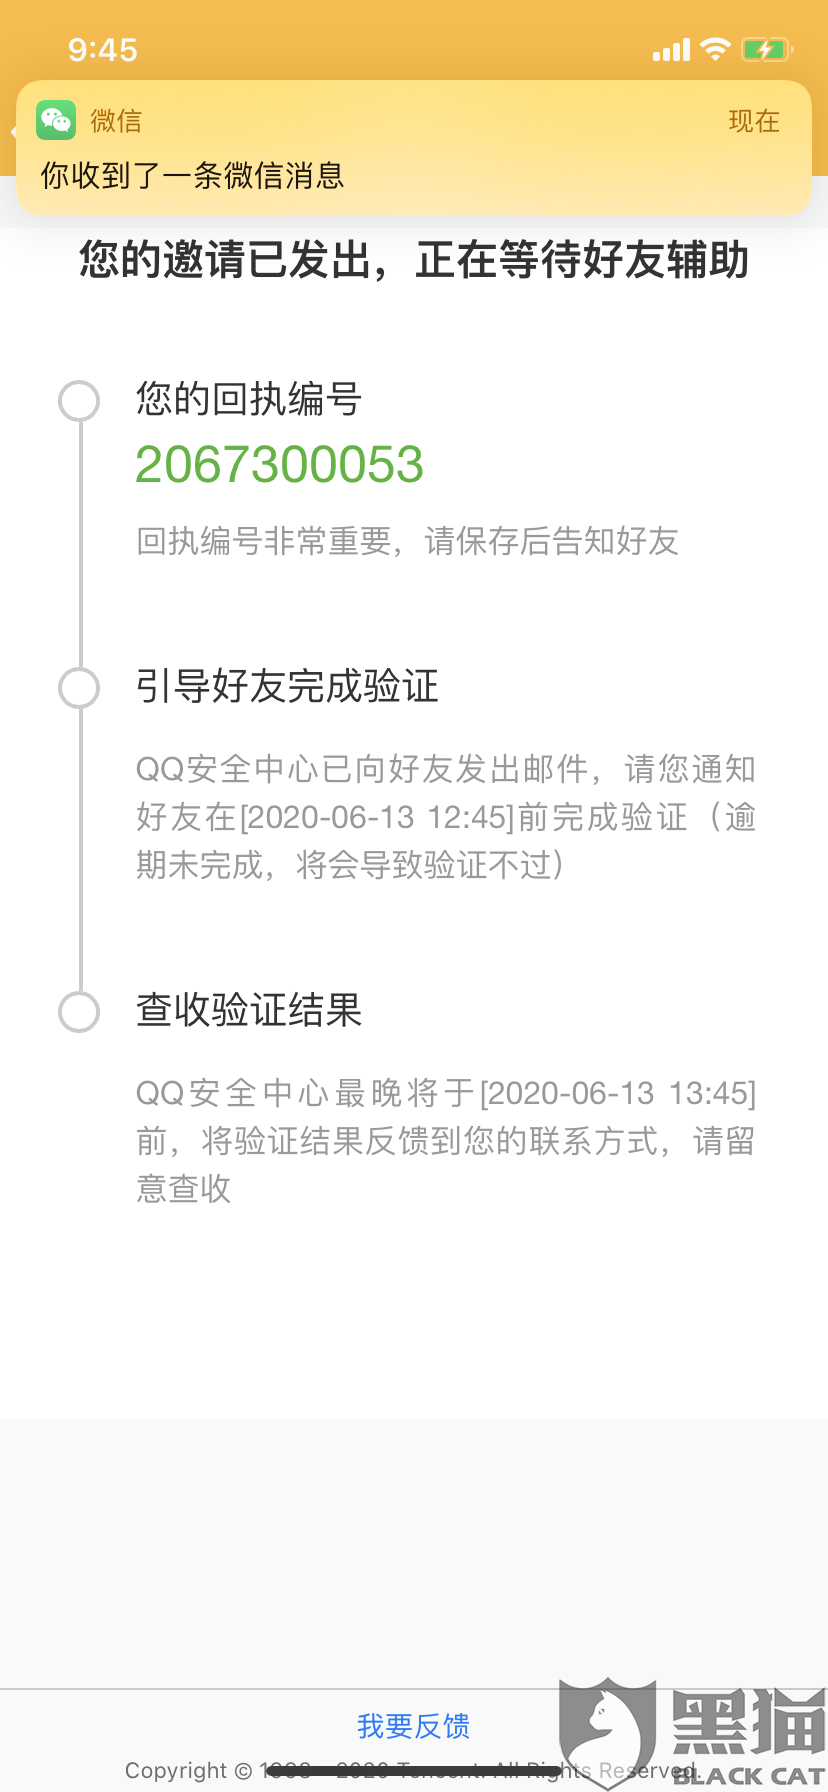 3、购买的QQ账号是否被找回：如何防止购买的QQ账号被卖家找回？